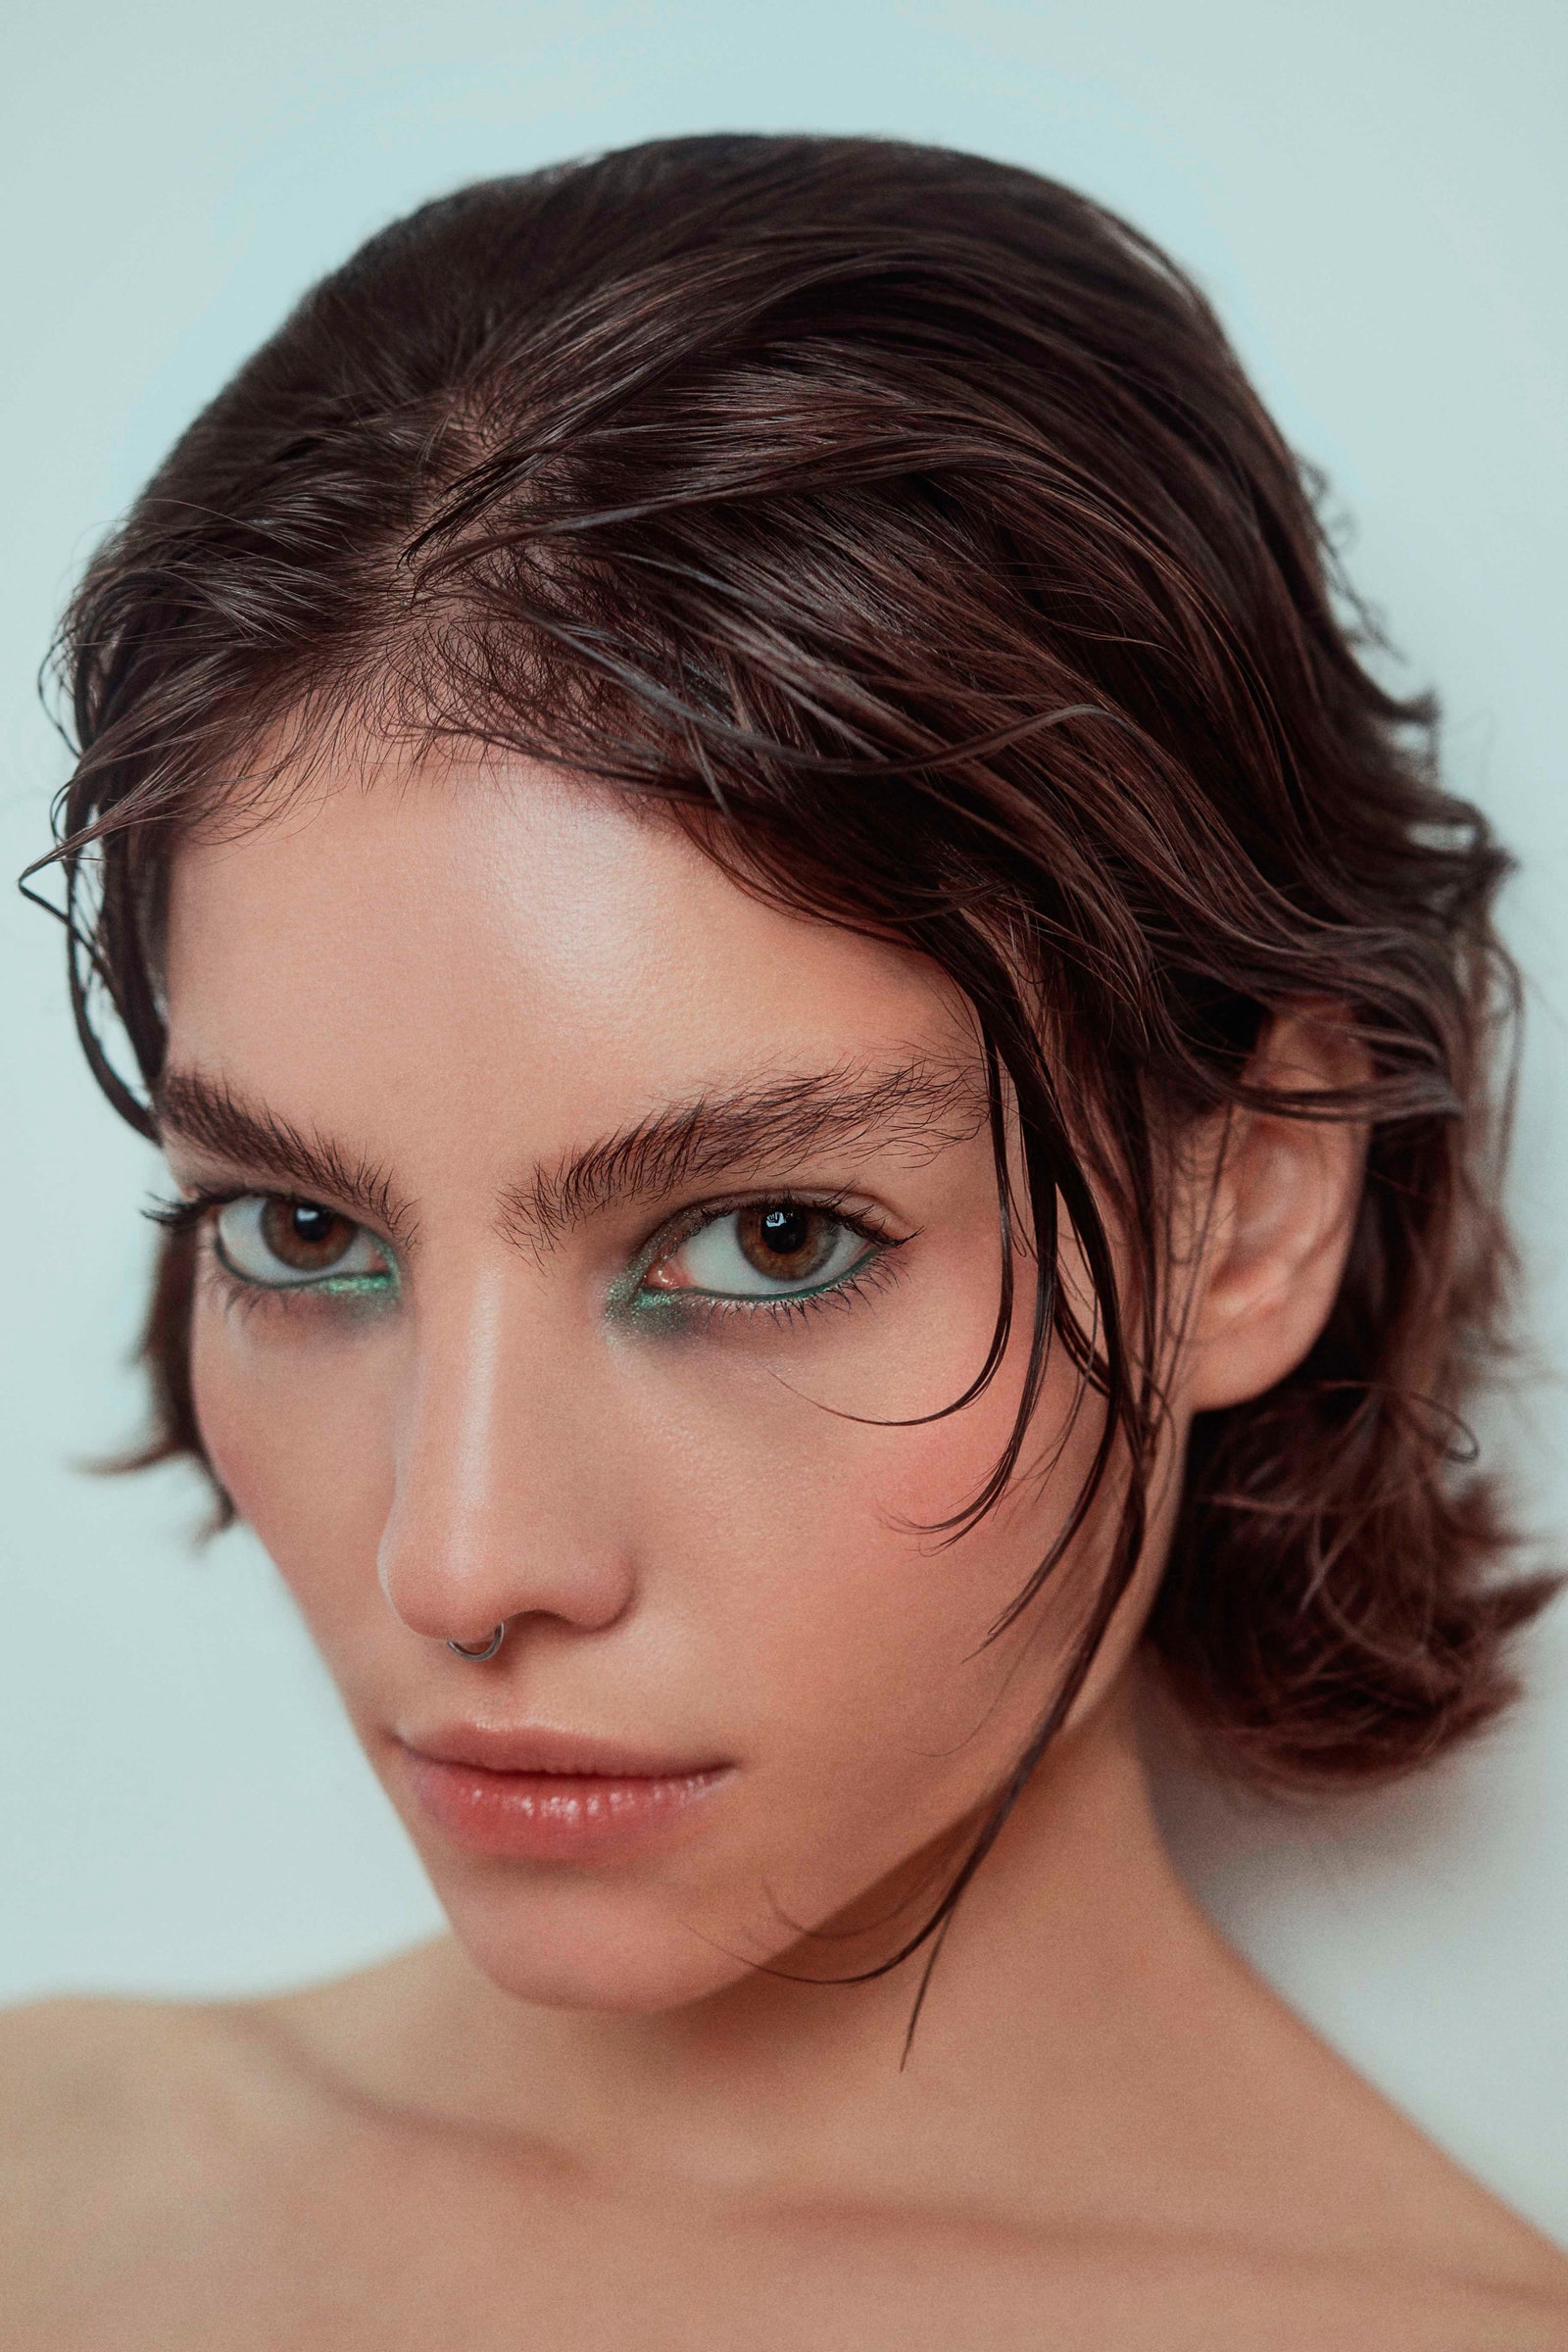 Фото Michaela Baitelman макияж и волосы Lele Degano модель Desire Falessi агентство Civiles